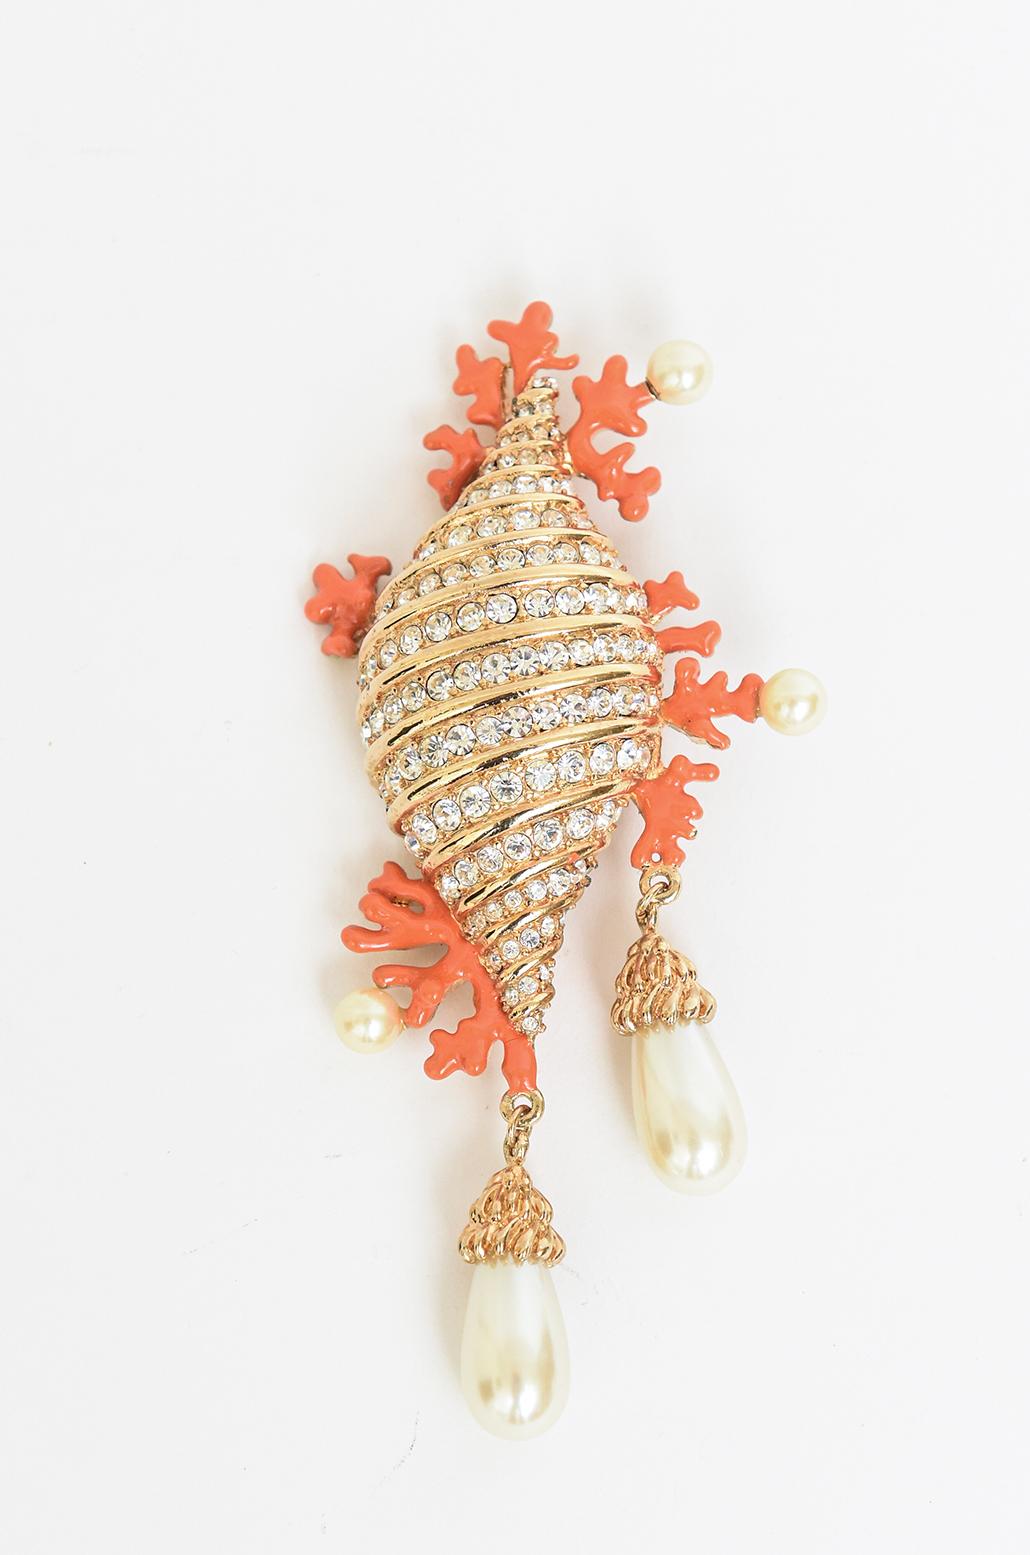 Diese atemberaubende, seltene signiert und gestempelt Hutton Wilkinson Pin und oder Brosche ist eine Muschel der herrlichen Kombination von Korallen-Emaille faux Perle, Gold-Platte und Strass. Sie ist mit seinen Initialen H und W und einer Krone